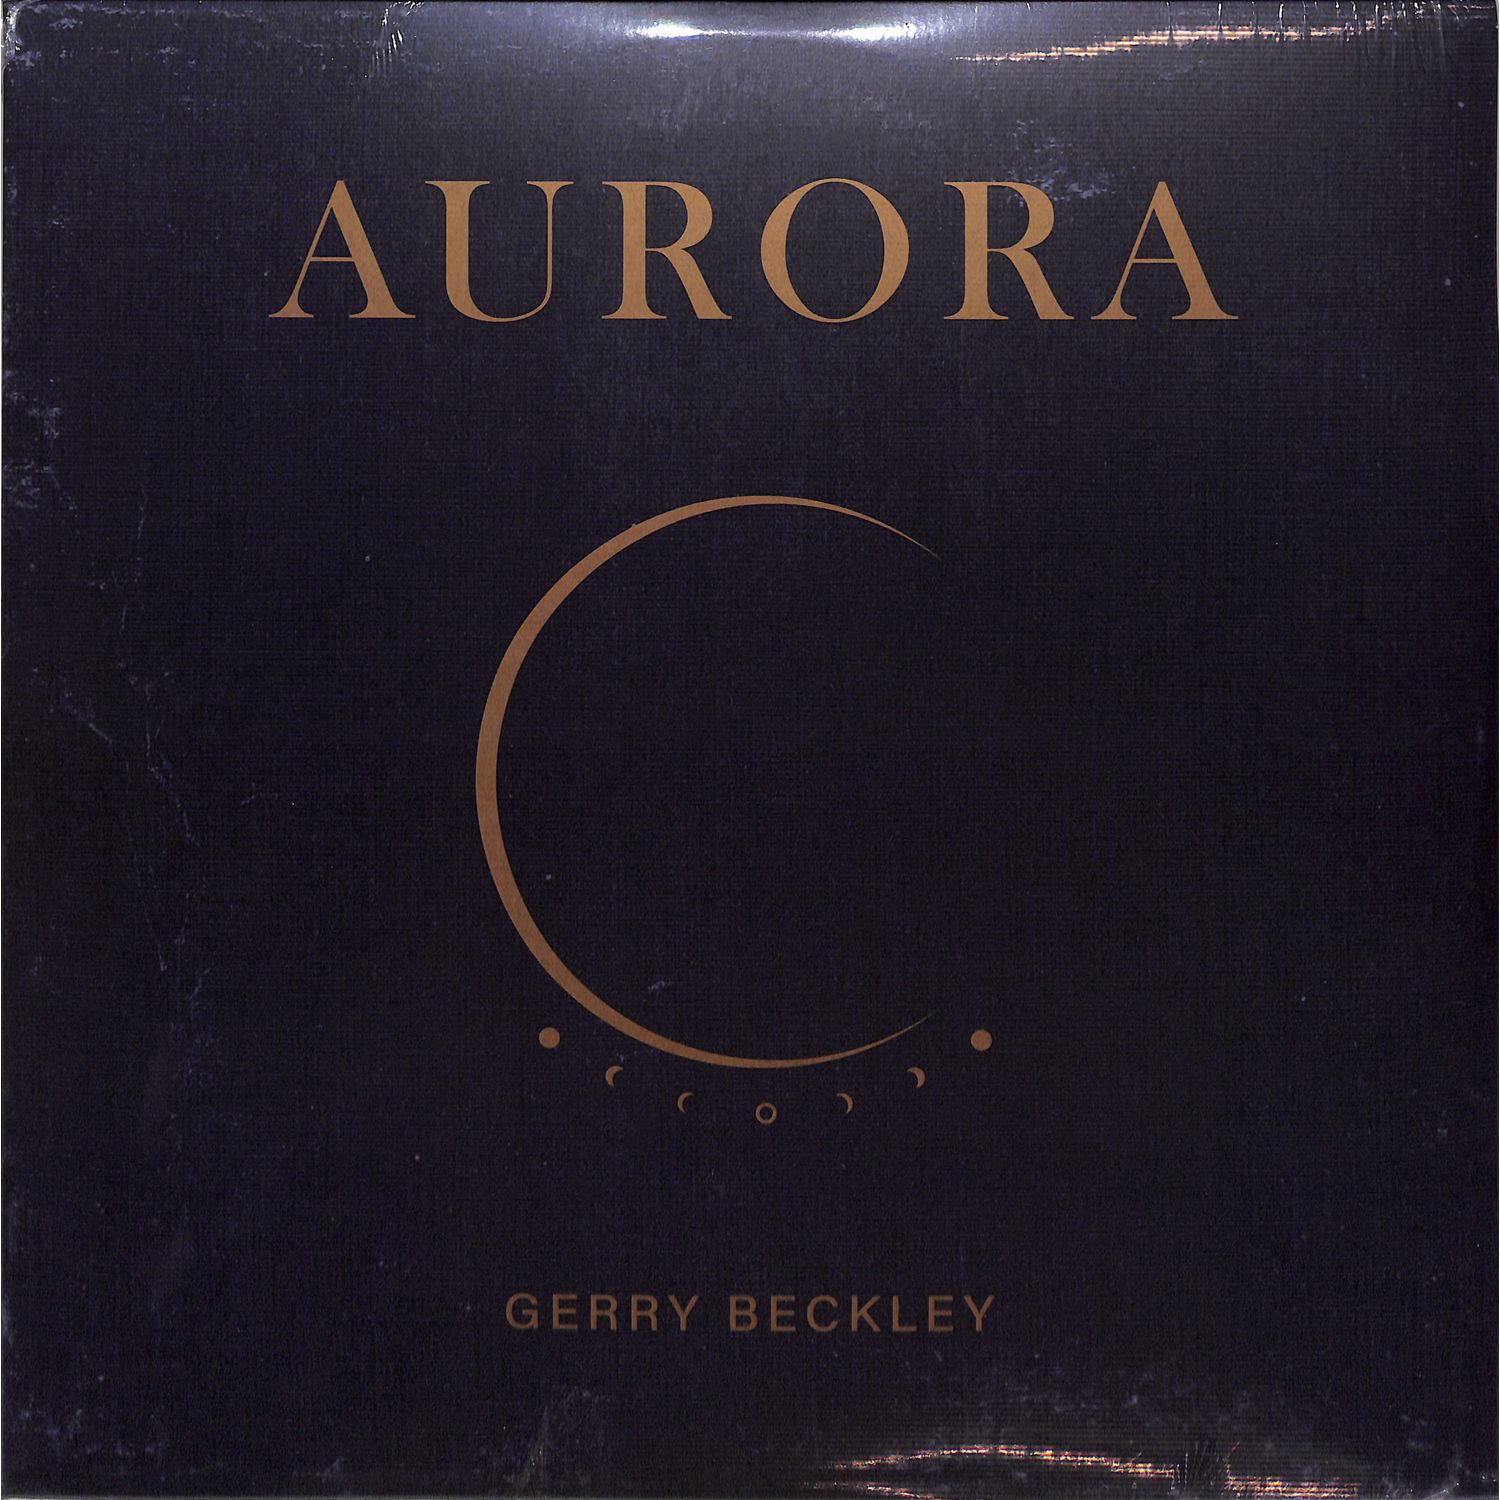 Gerry Beckley - AURORA 